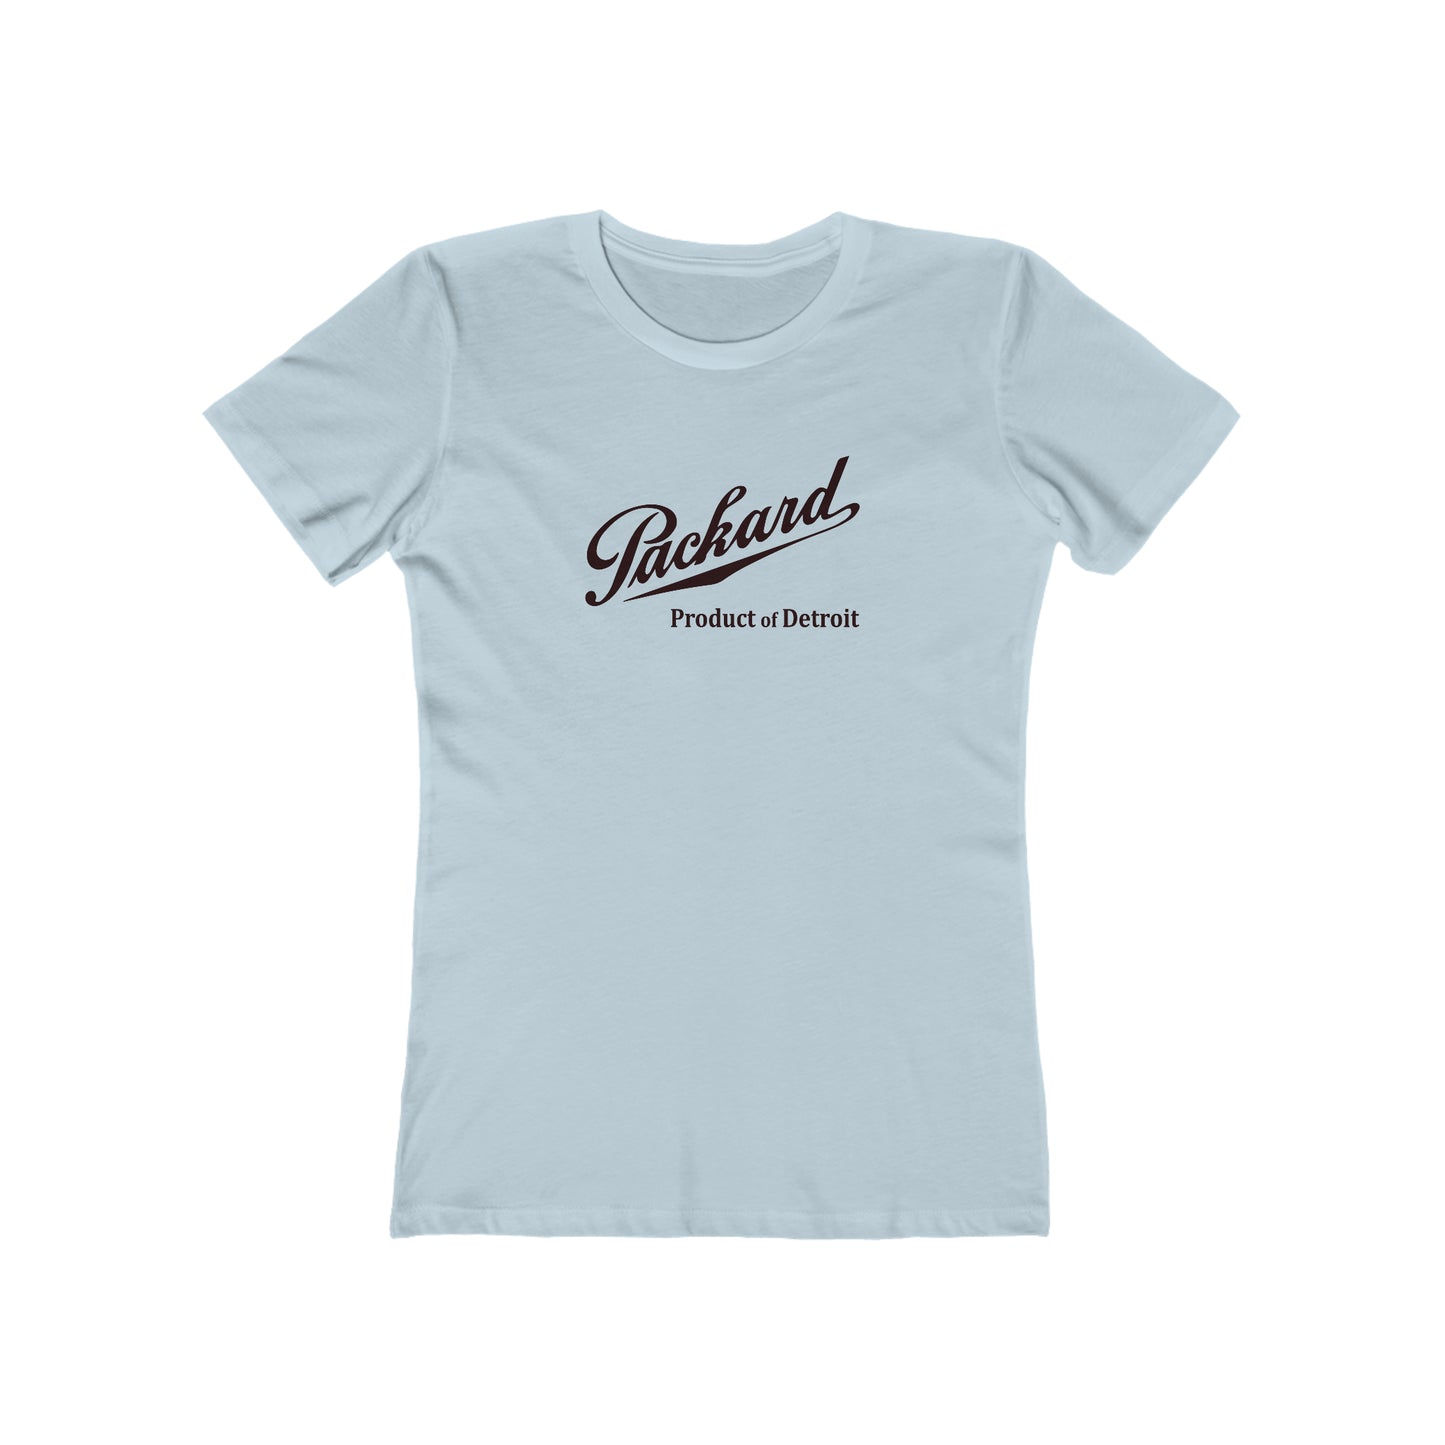 Packard - Women's T-Shirt